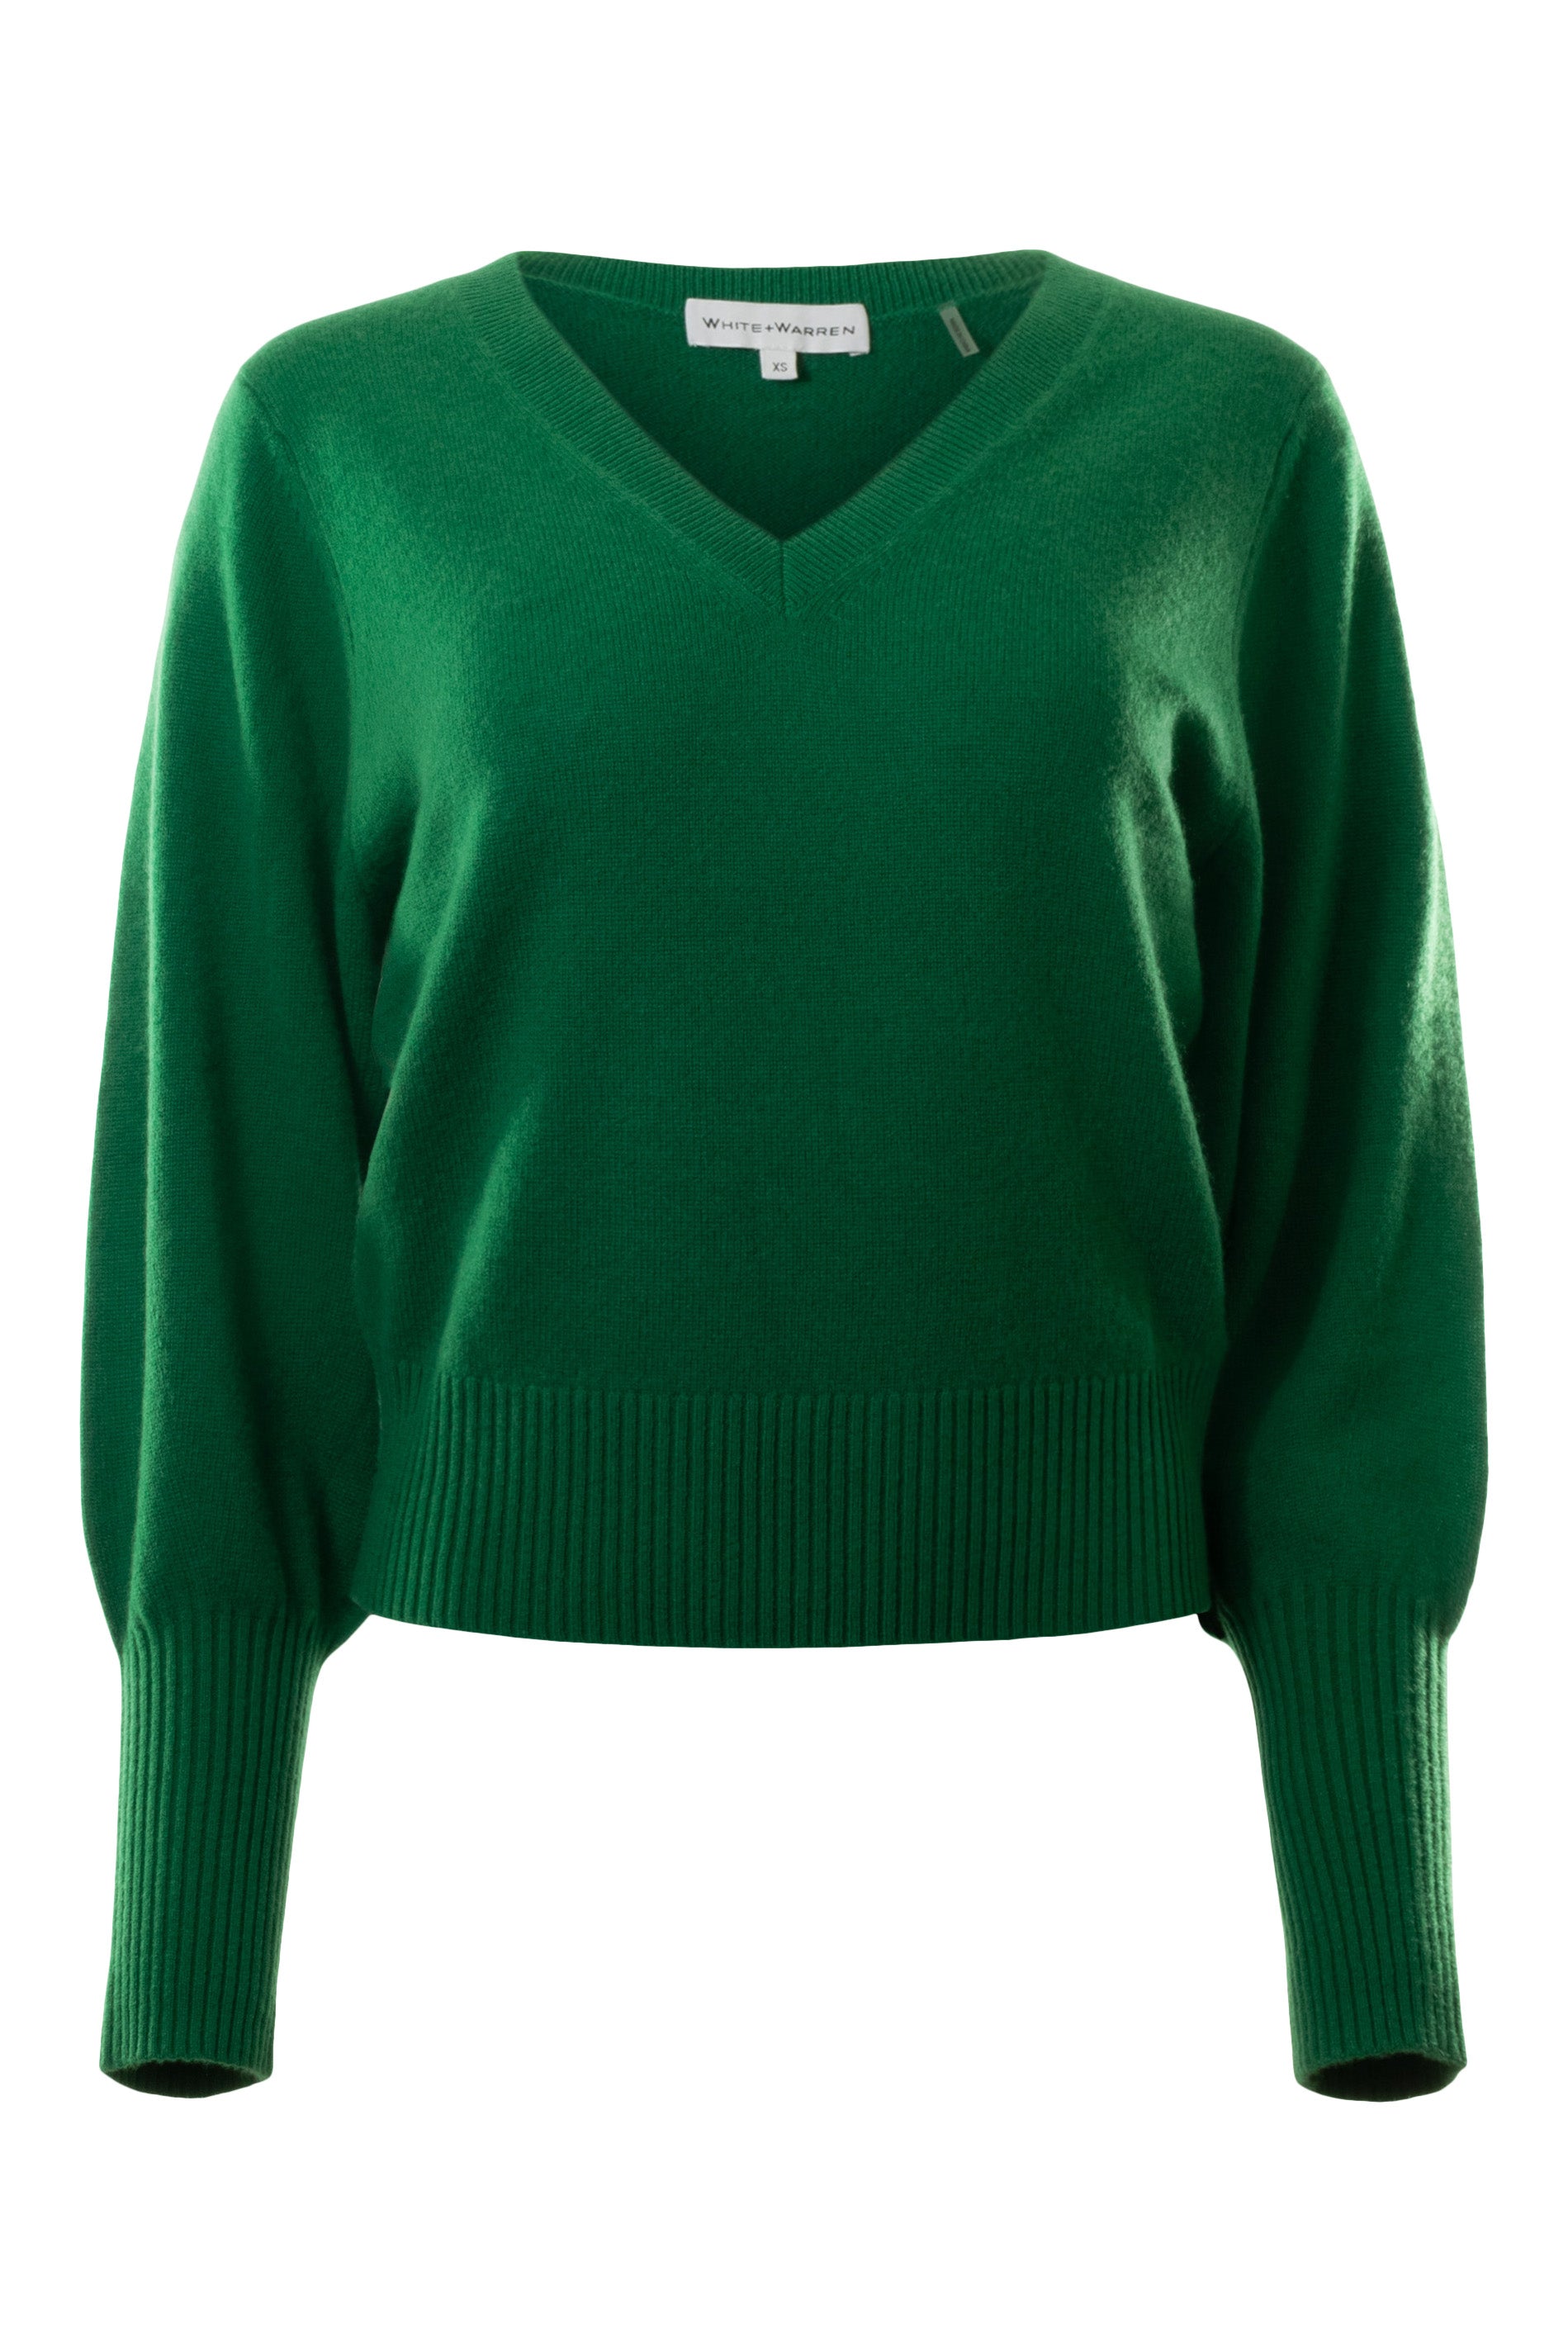 White & Warren Cashmere Blouson Sleeve Vneck Sweater in Jewel Green